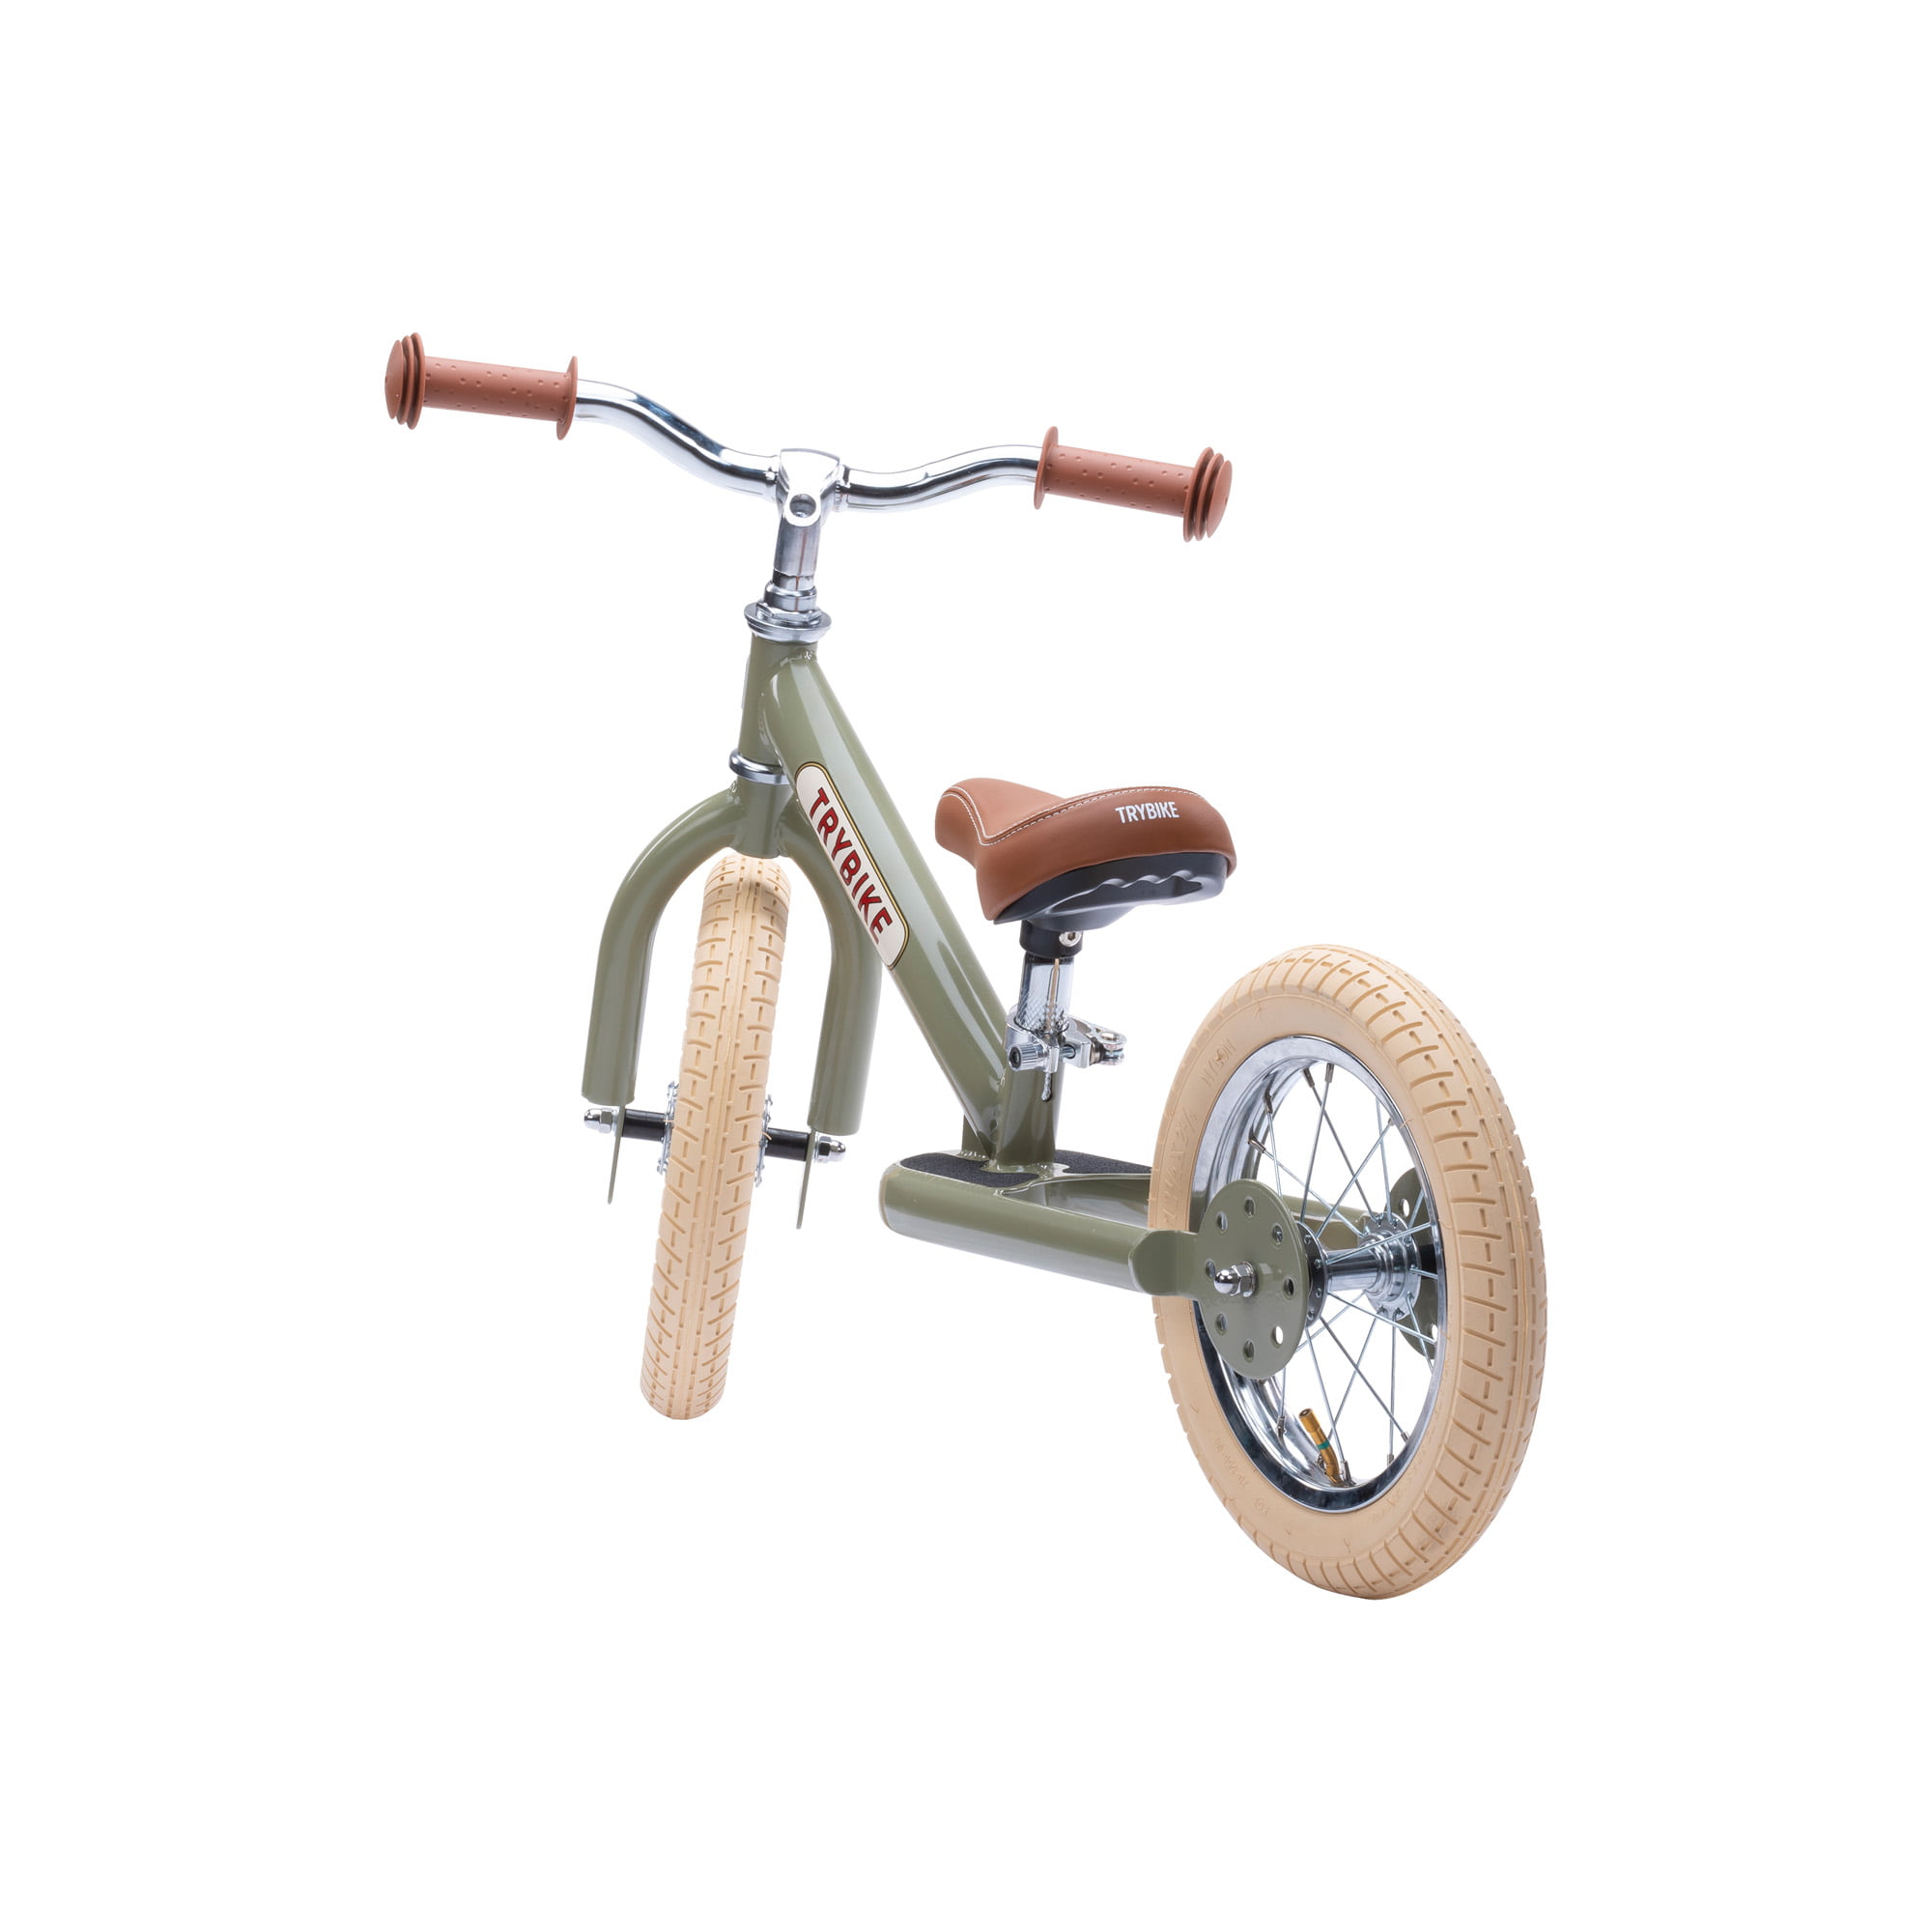 Trybike steel balance bike 2 in 1 – Vintage green